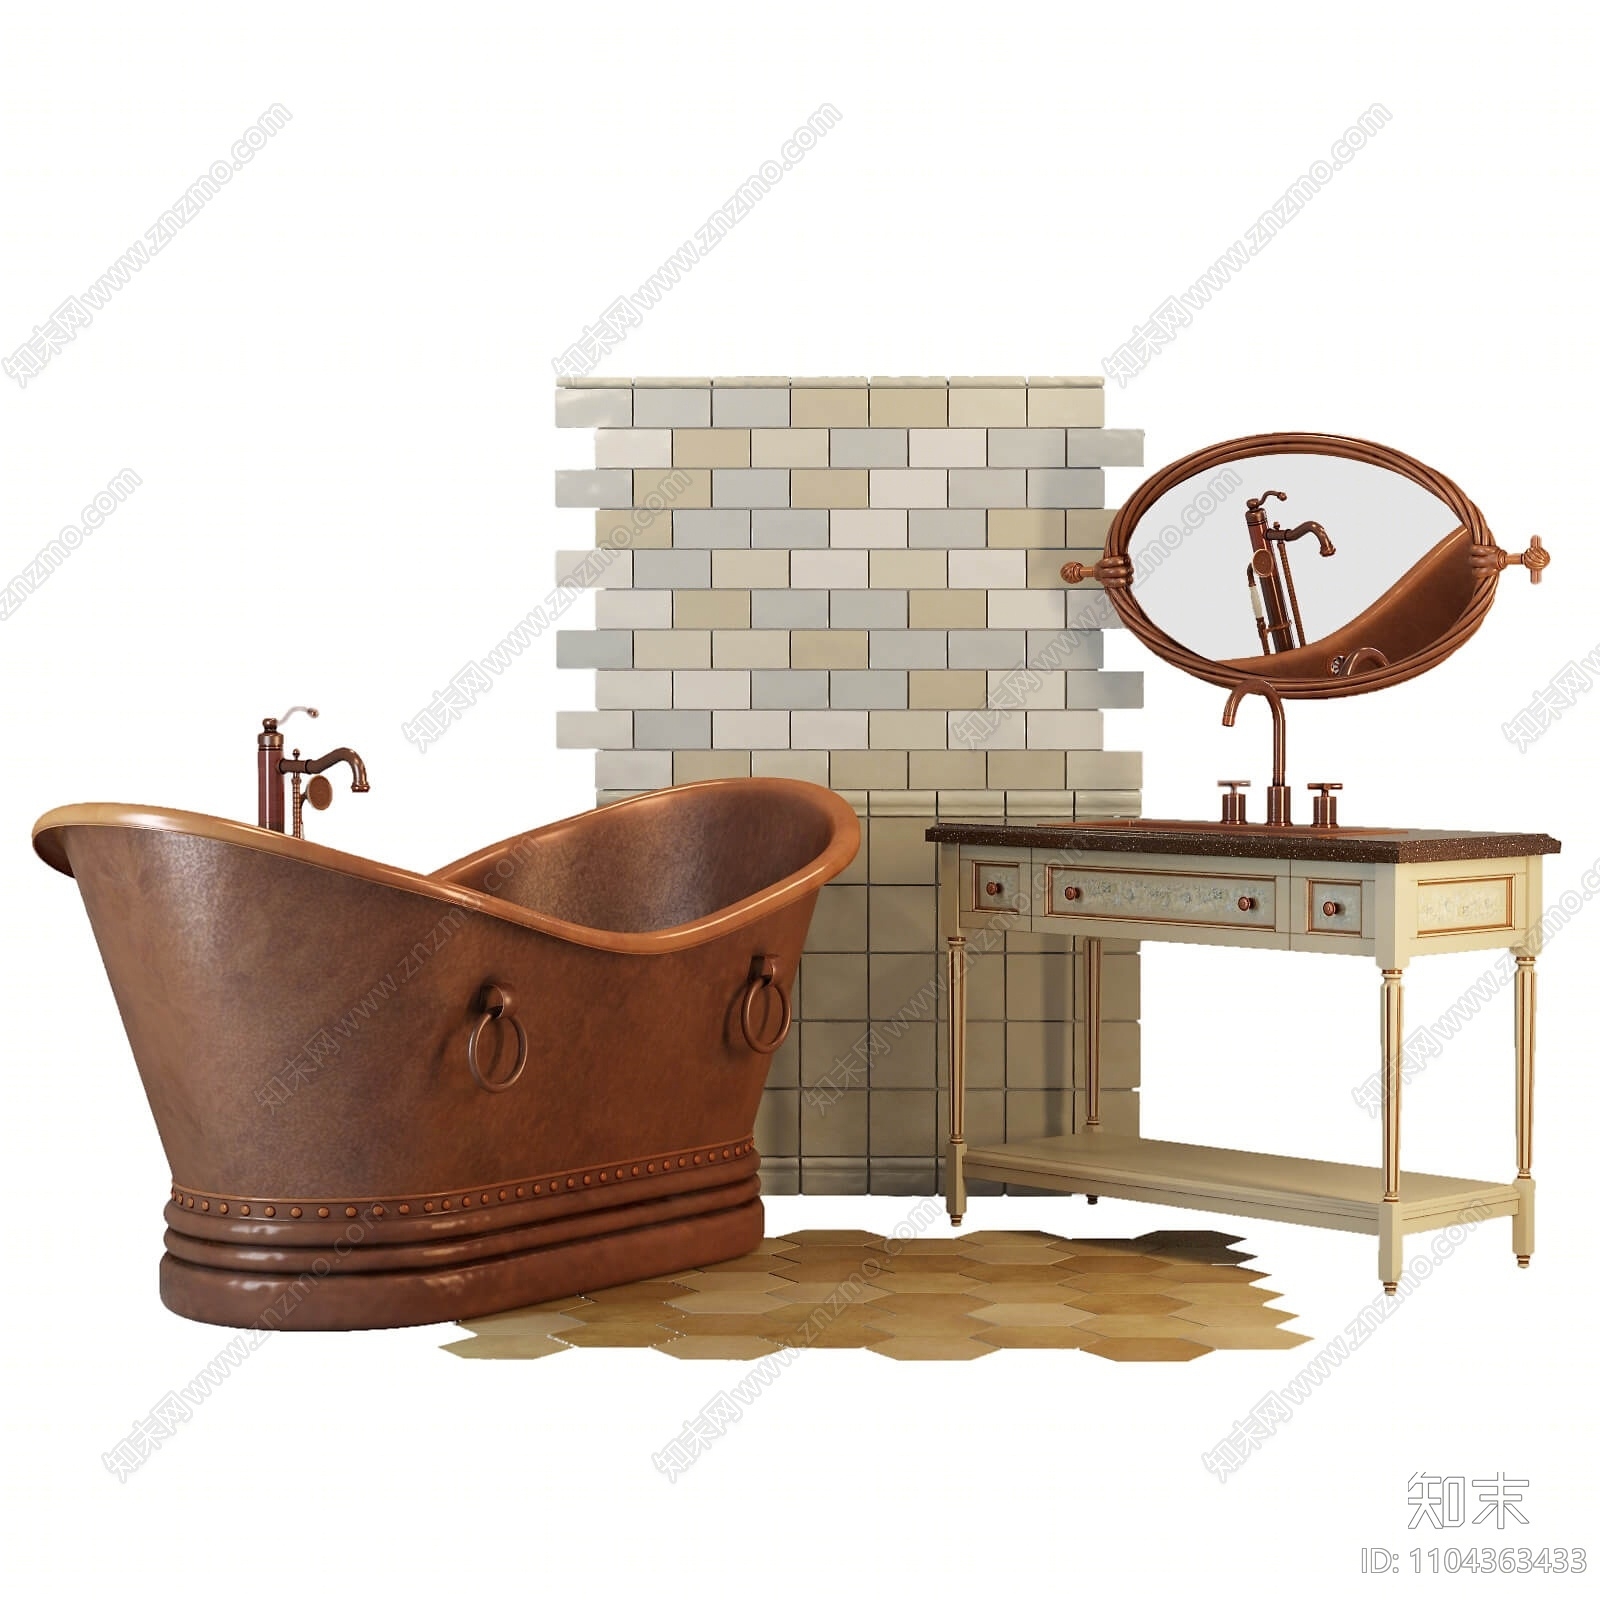 美式浴缸3D模型下载【ID:1104363433】